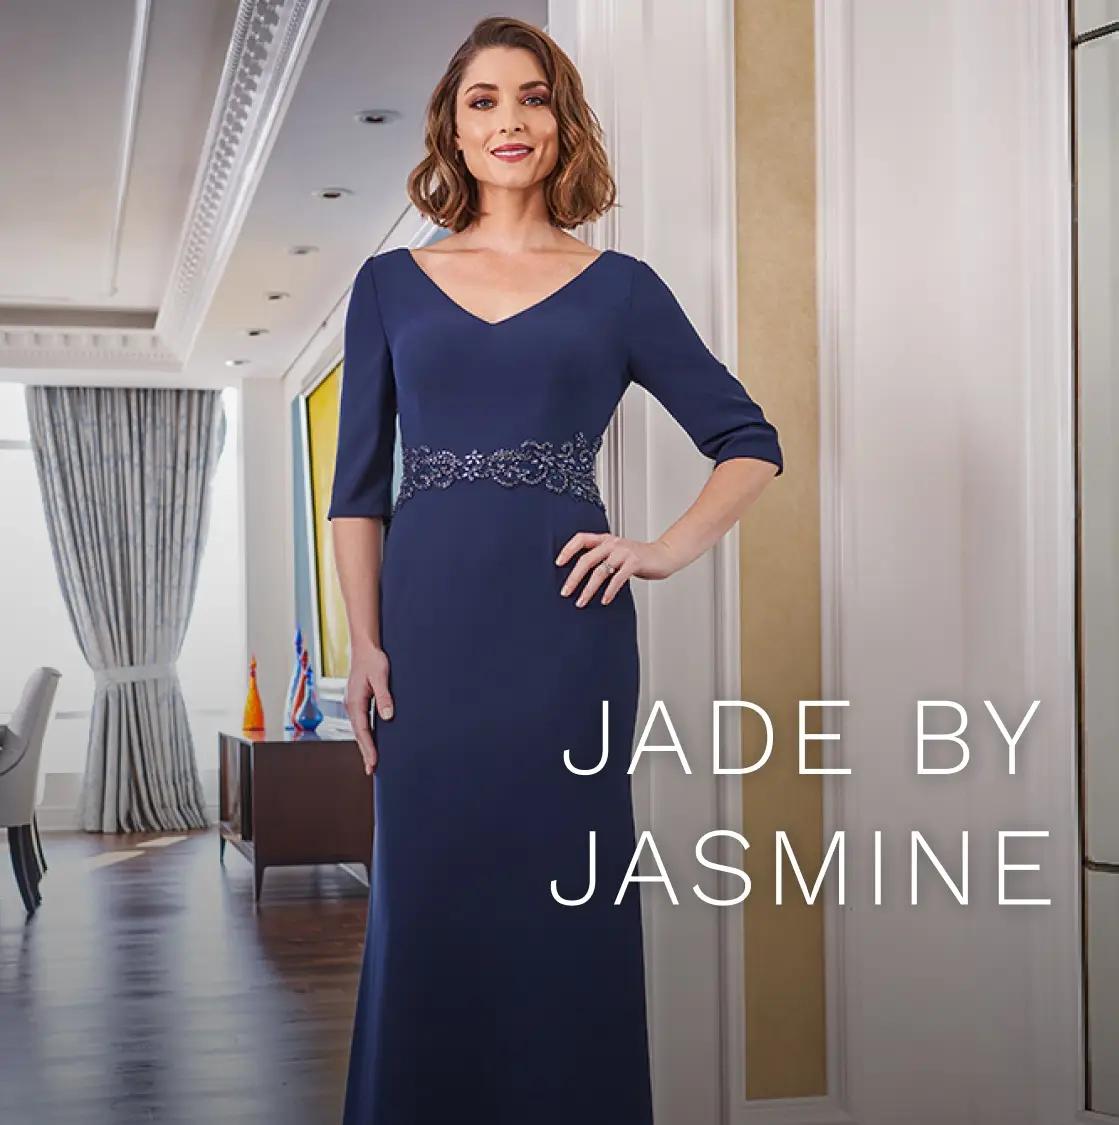 Jade By Jasmine